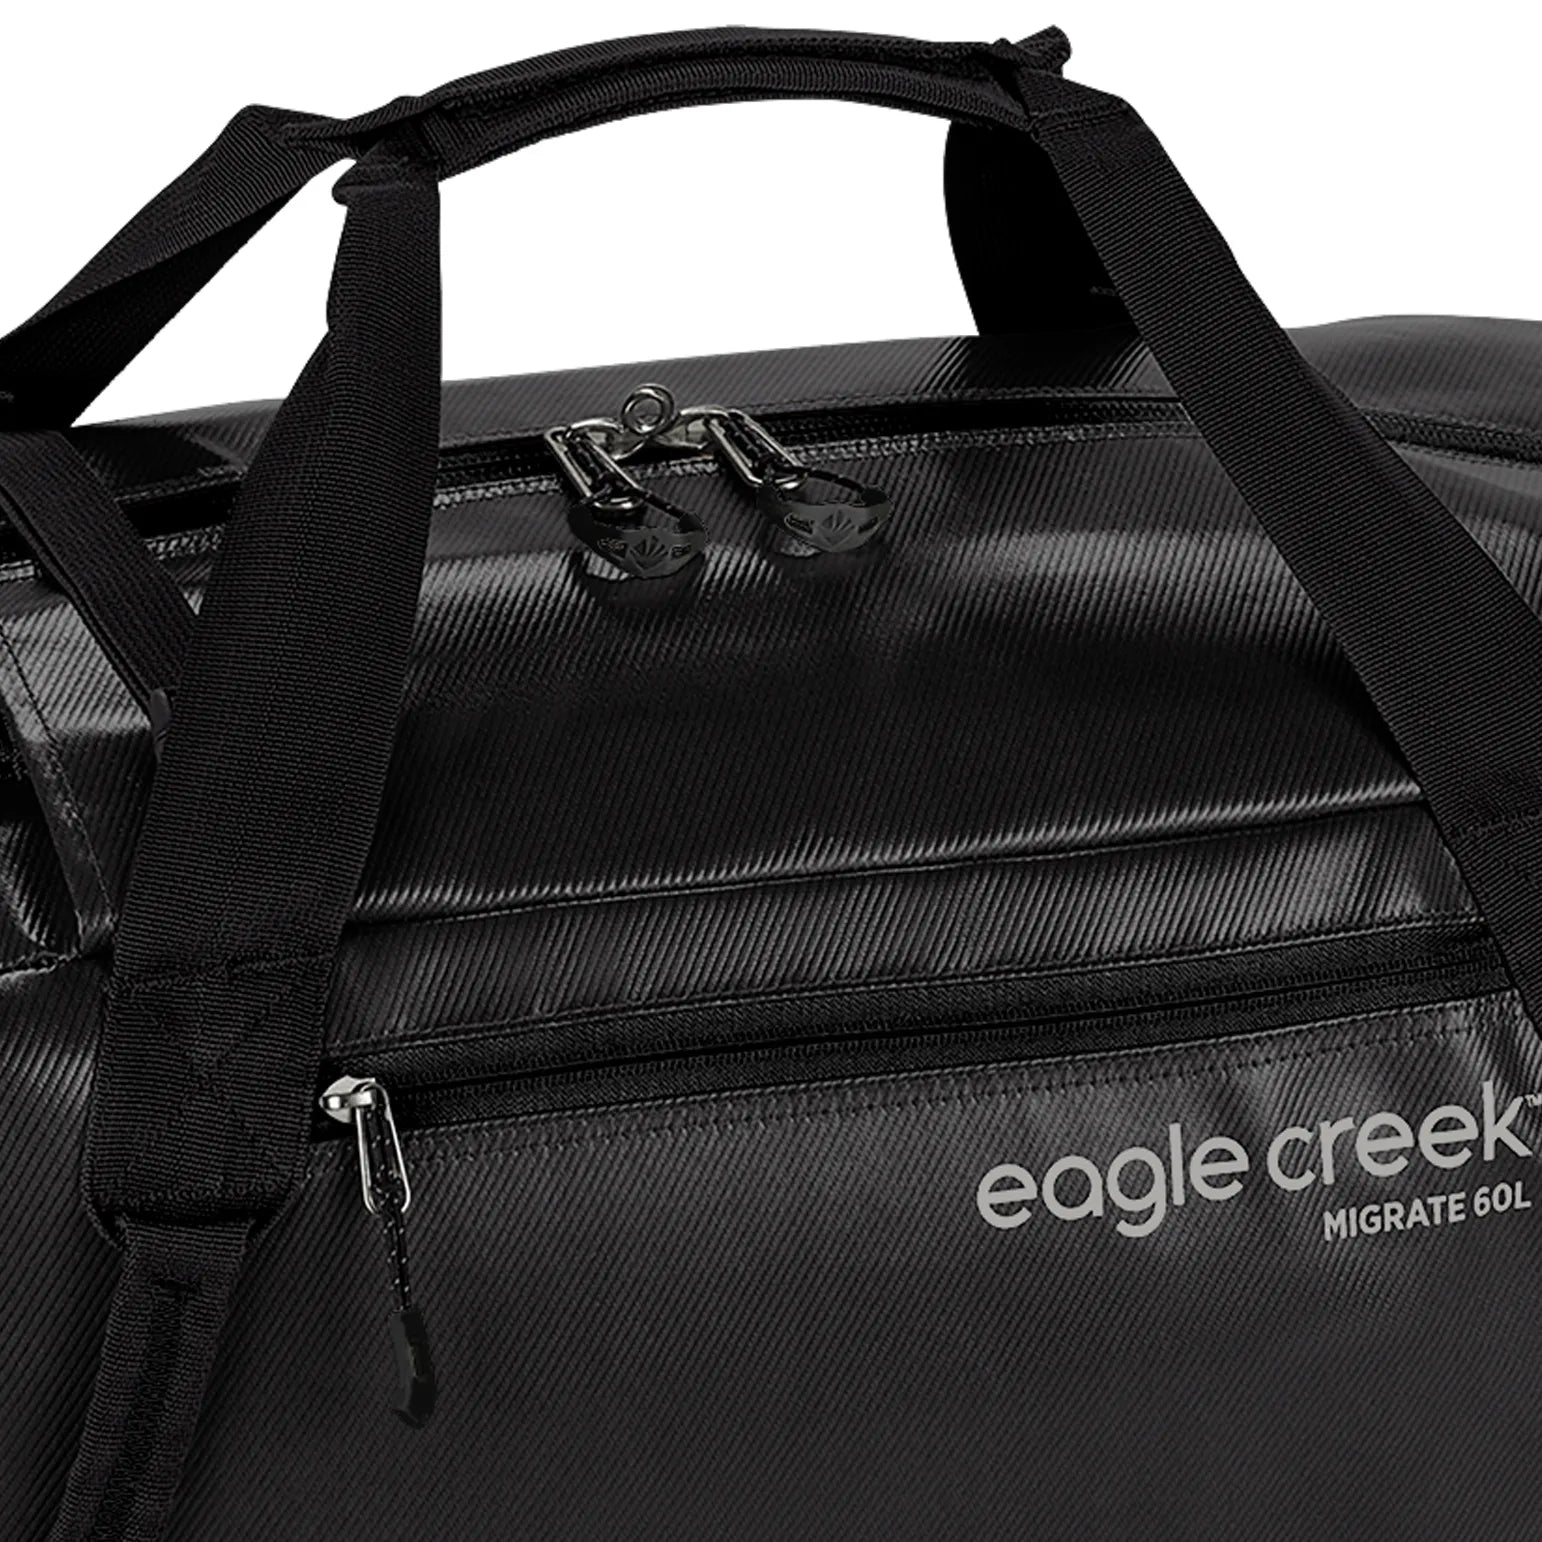 Eagle Creek Migrate sac de voyage 59 cm - jaune pissenlit